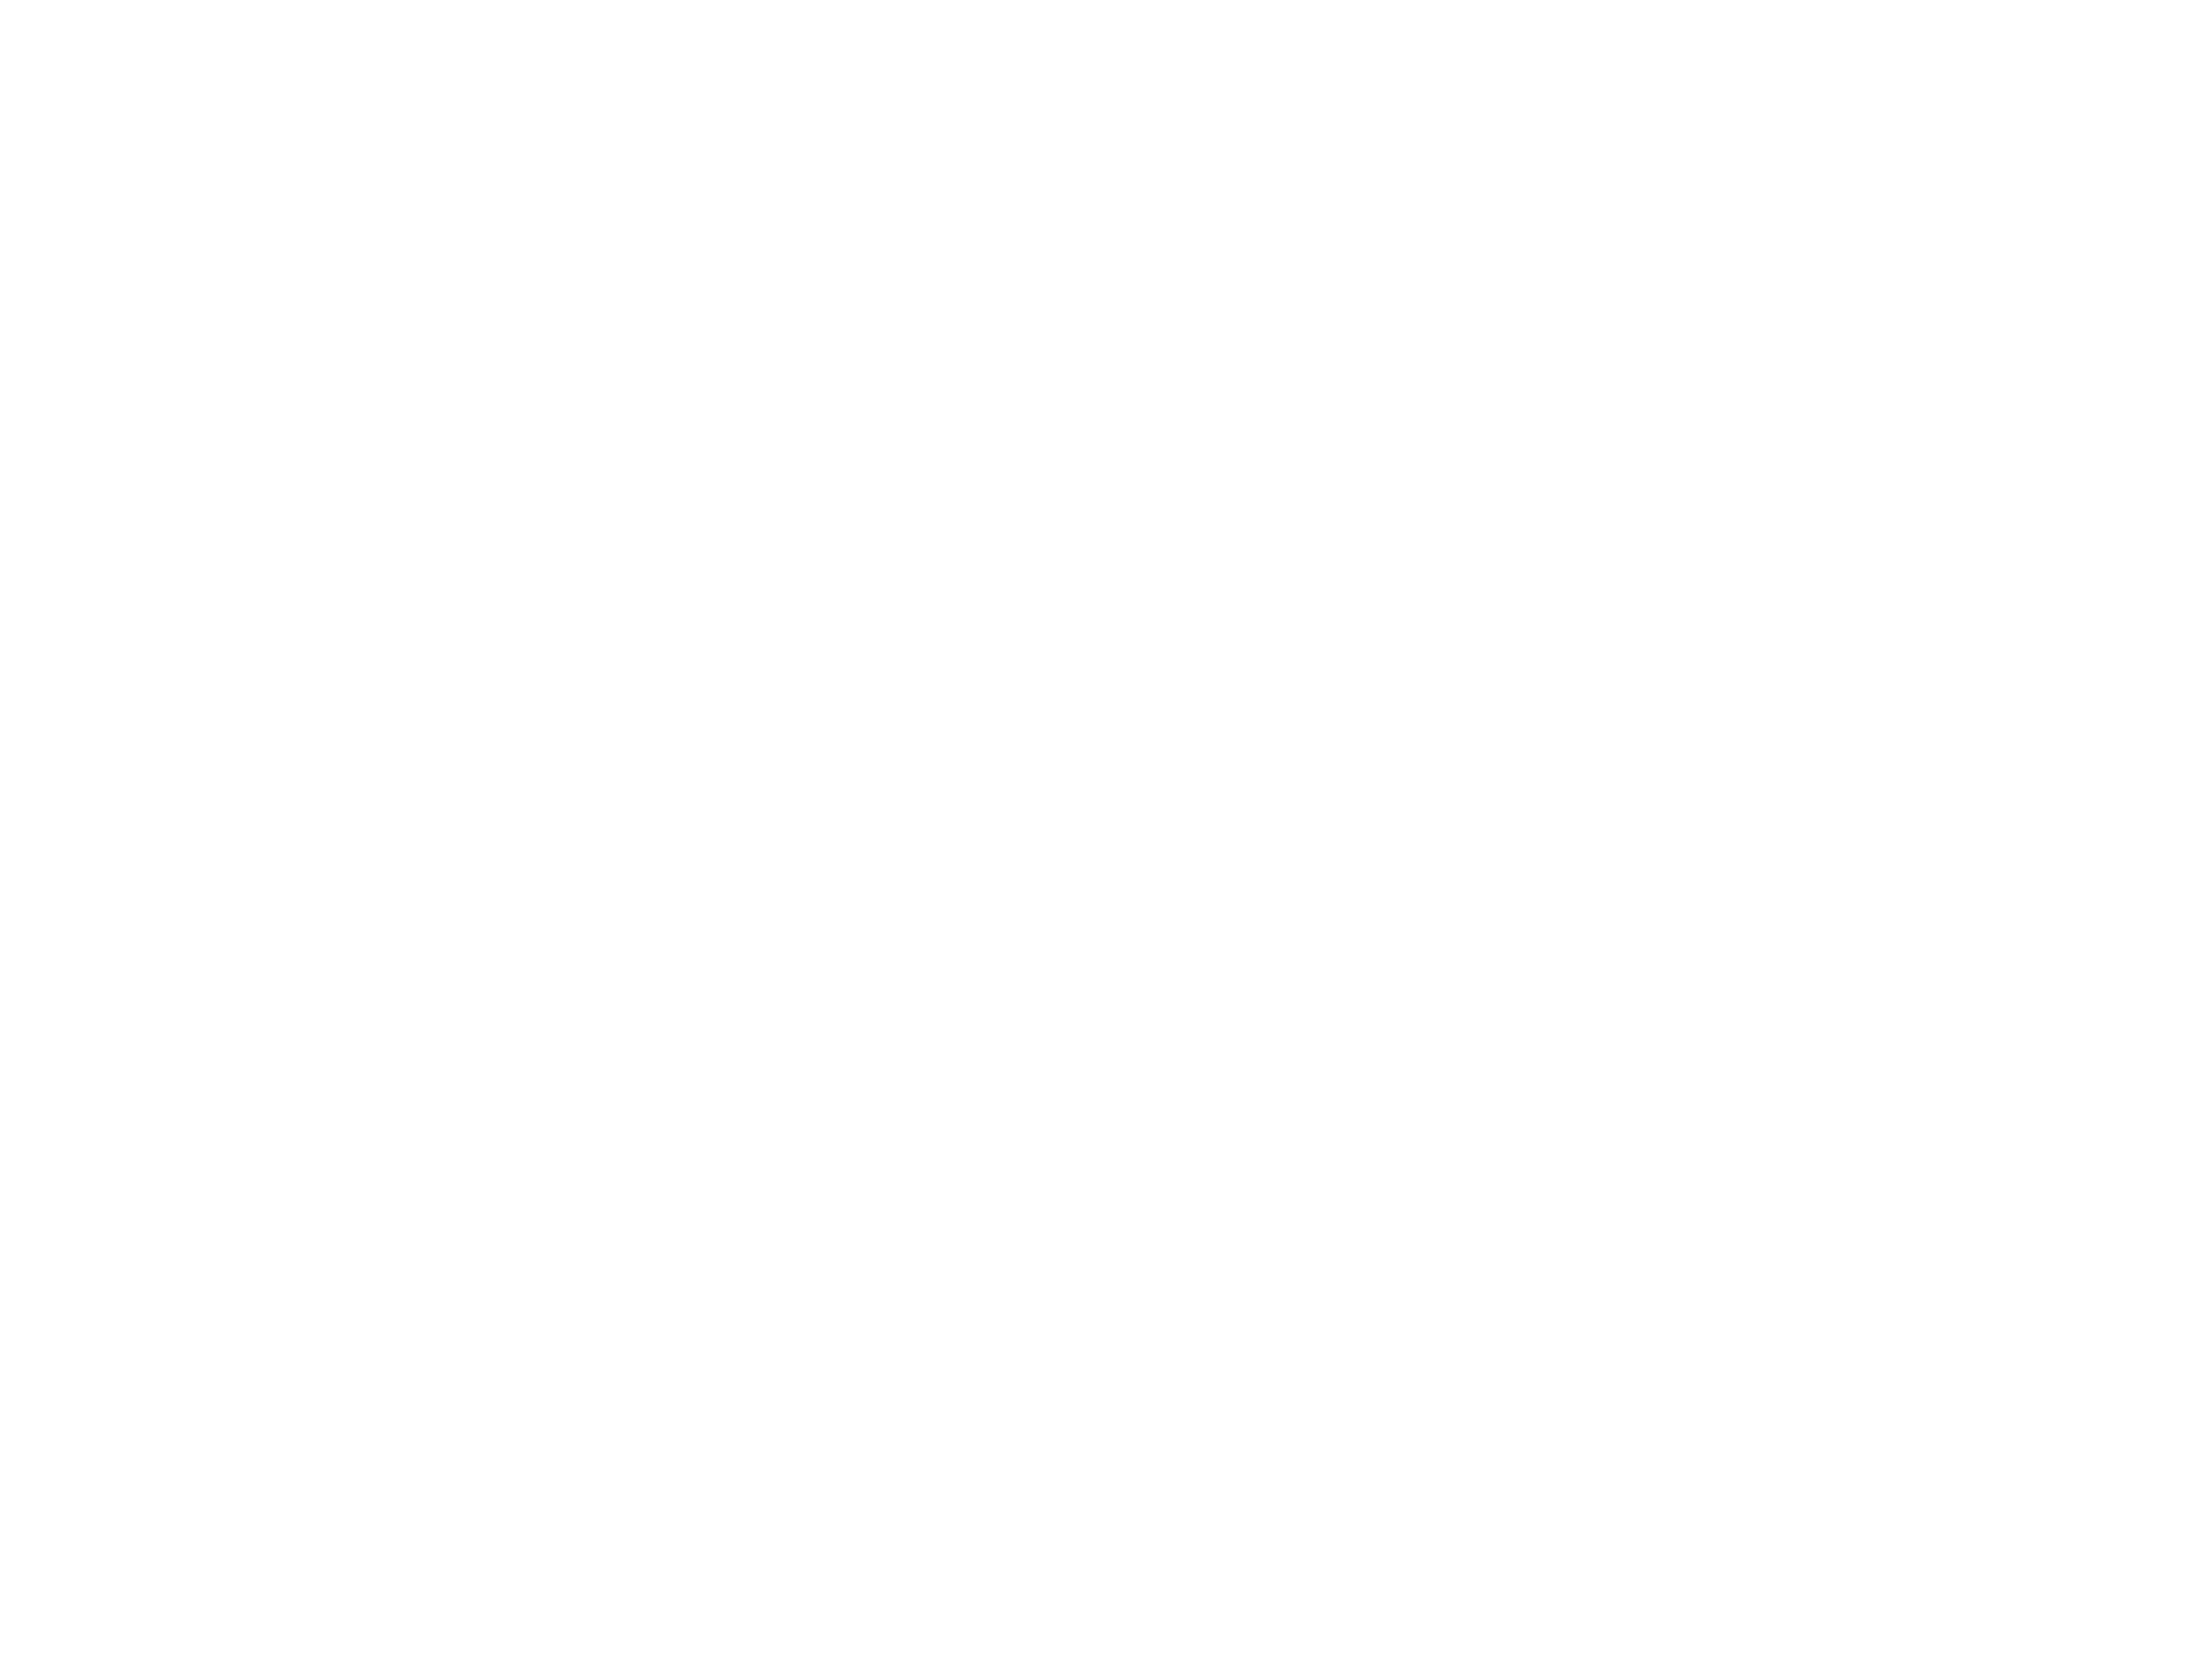 JoLo_A Jones Company_Footer-01